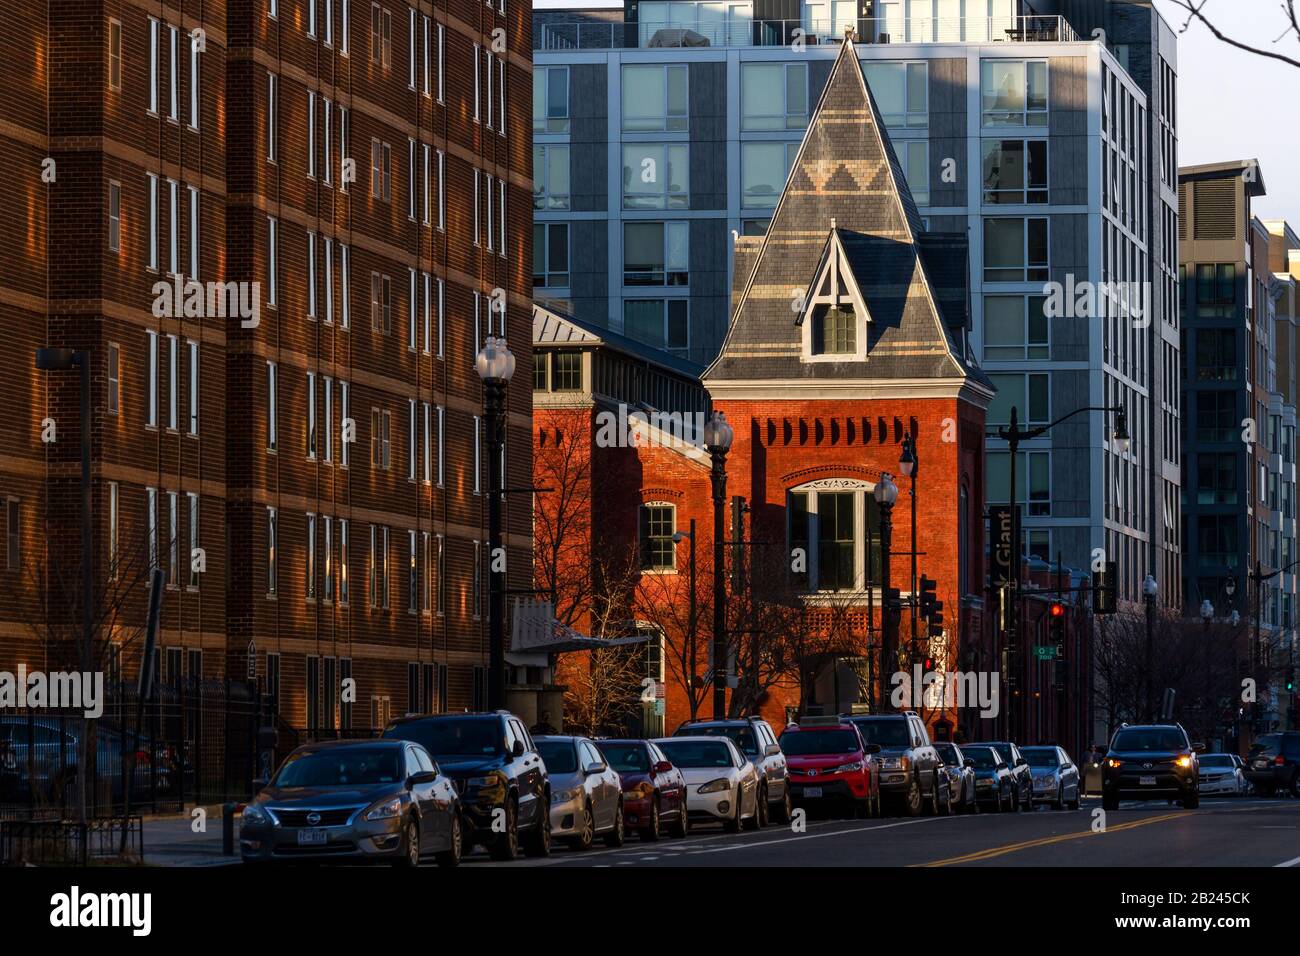 Washington DC Street scena dal quartiere Shaw guardando il mercato a o sviluppo che preserva lo storico mercato del Nord. Immagine scattata 2020. Foto Stock